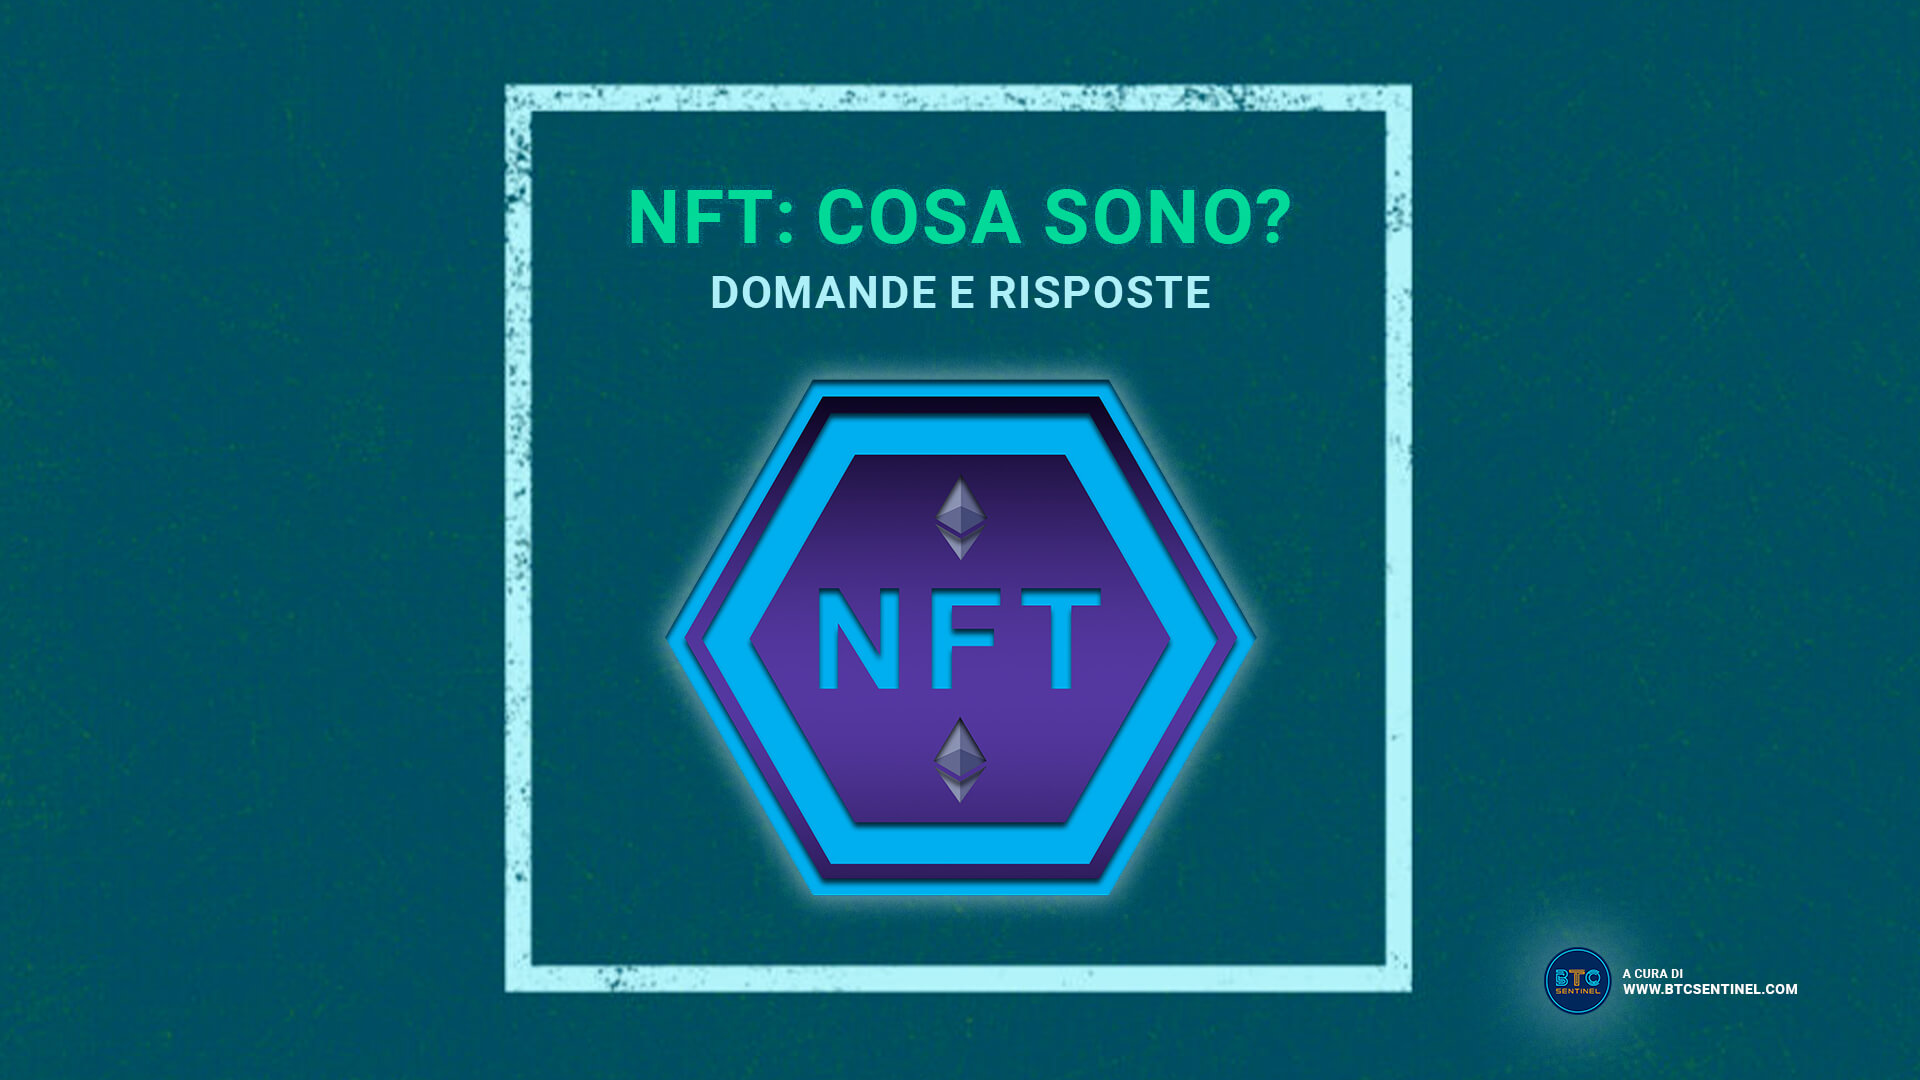 NFT cosa sono? Domande e risposte per capire gli NFT